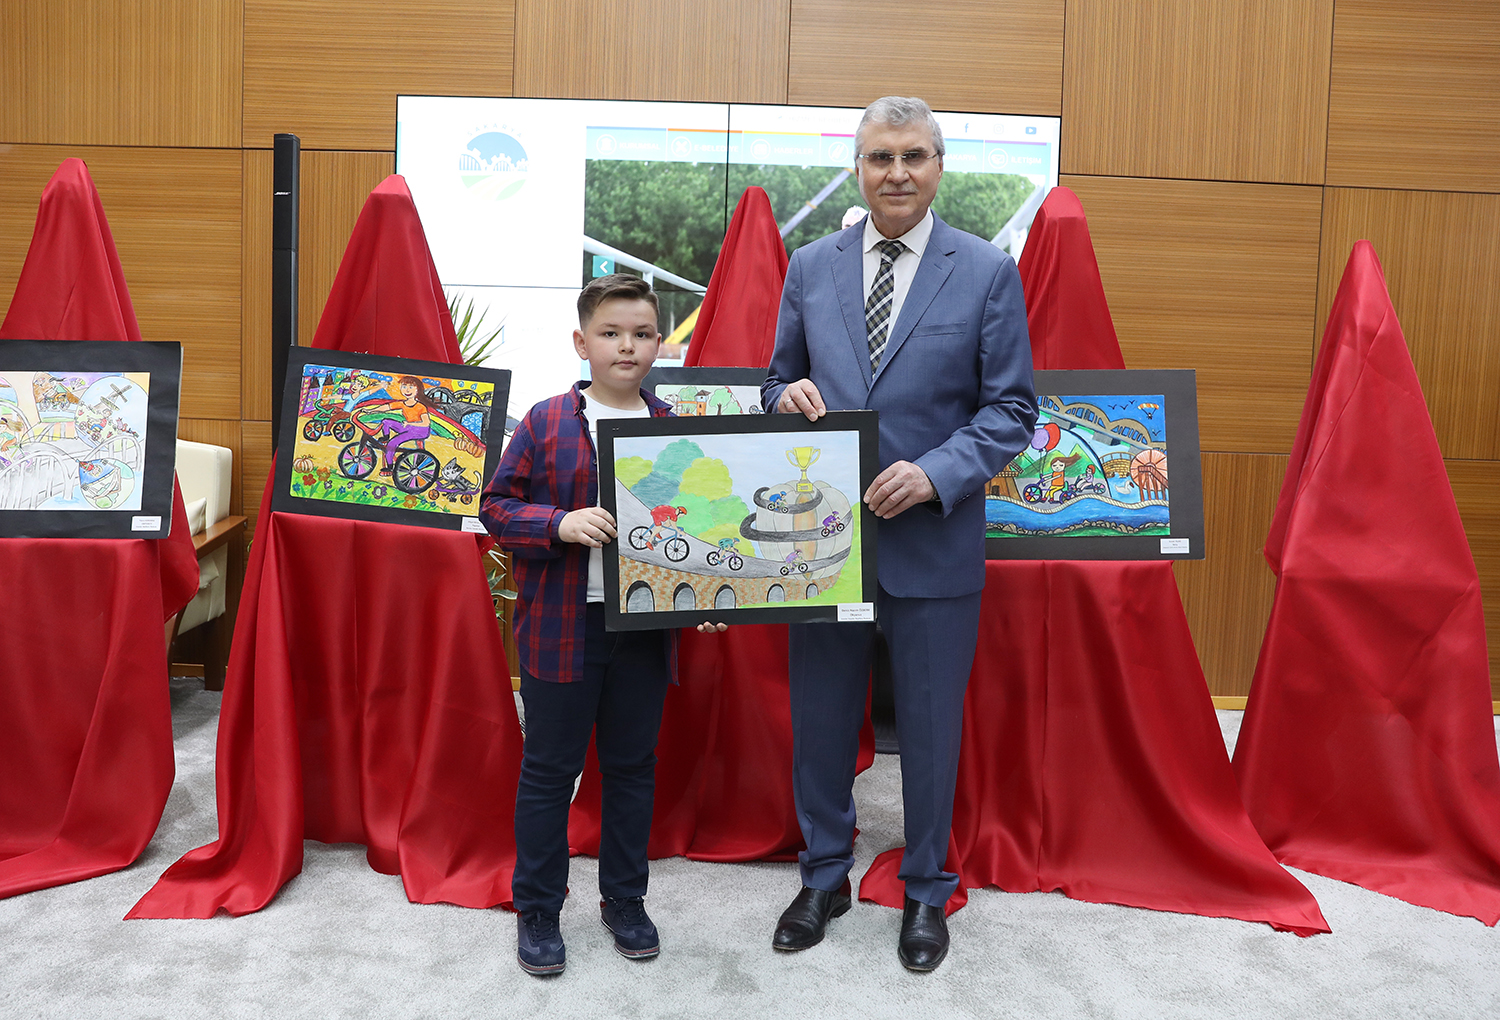 Resim yarışmasında dereceye giren öğrenciler ödüllerini Başkan Yüce’den aldı